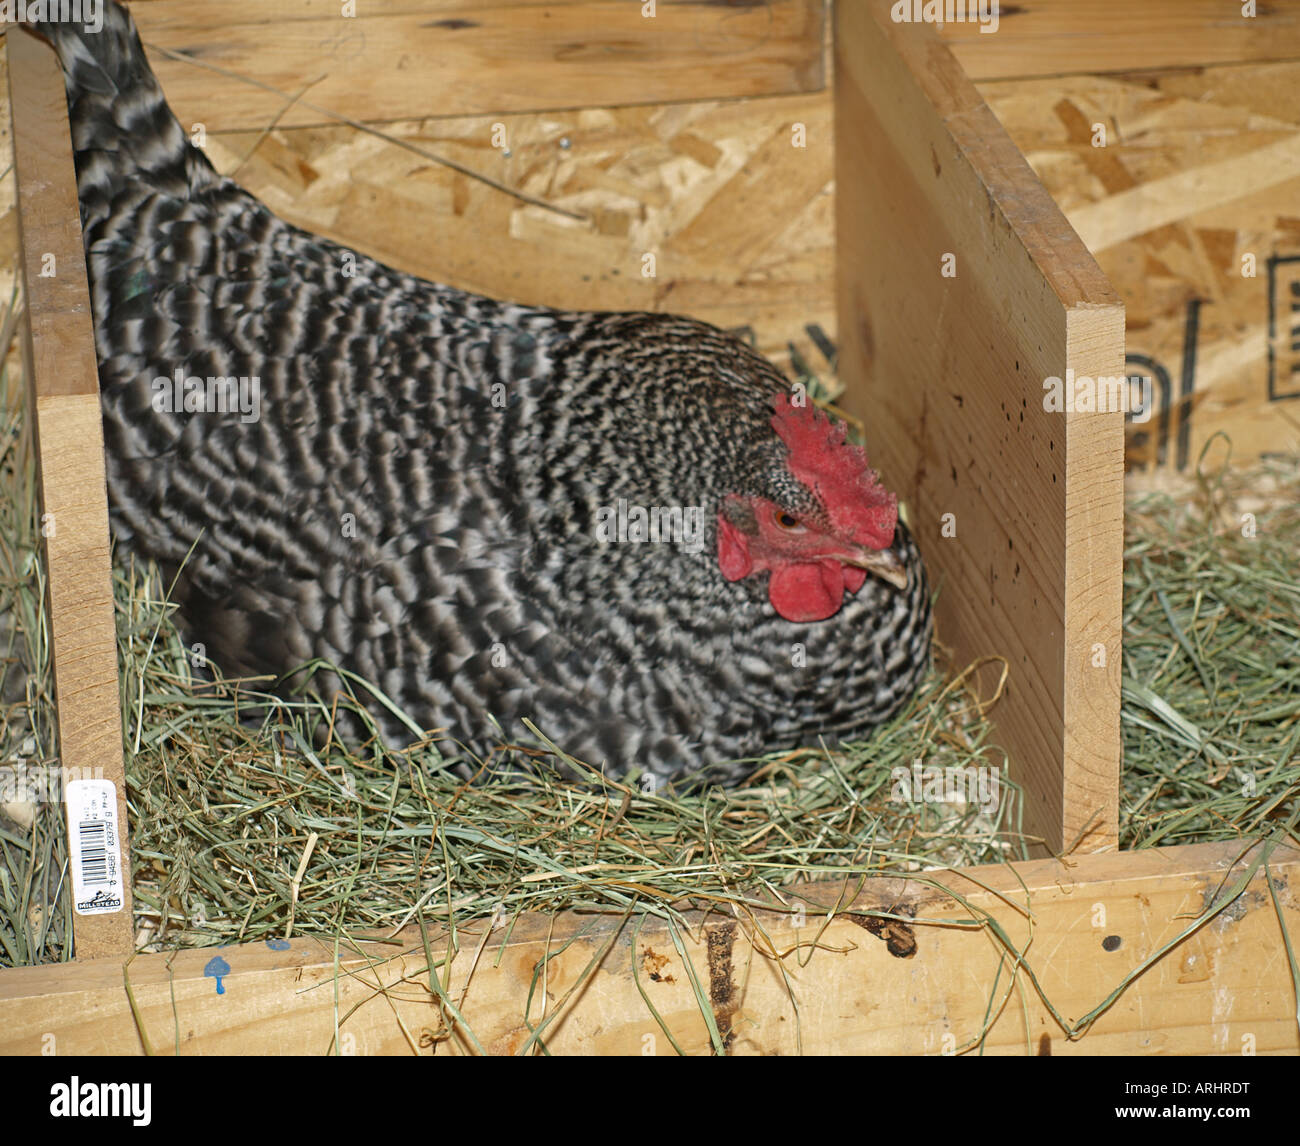 USA OREGON A verjährt Plymouth Rock sitzt Henne Huhn auf ein Nest, ein Ei zu legen, in einem kleinen Hühnerstall Stockfoto